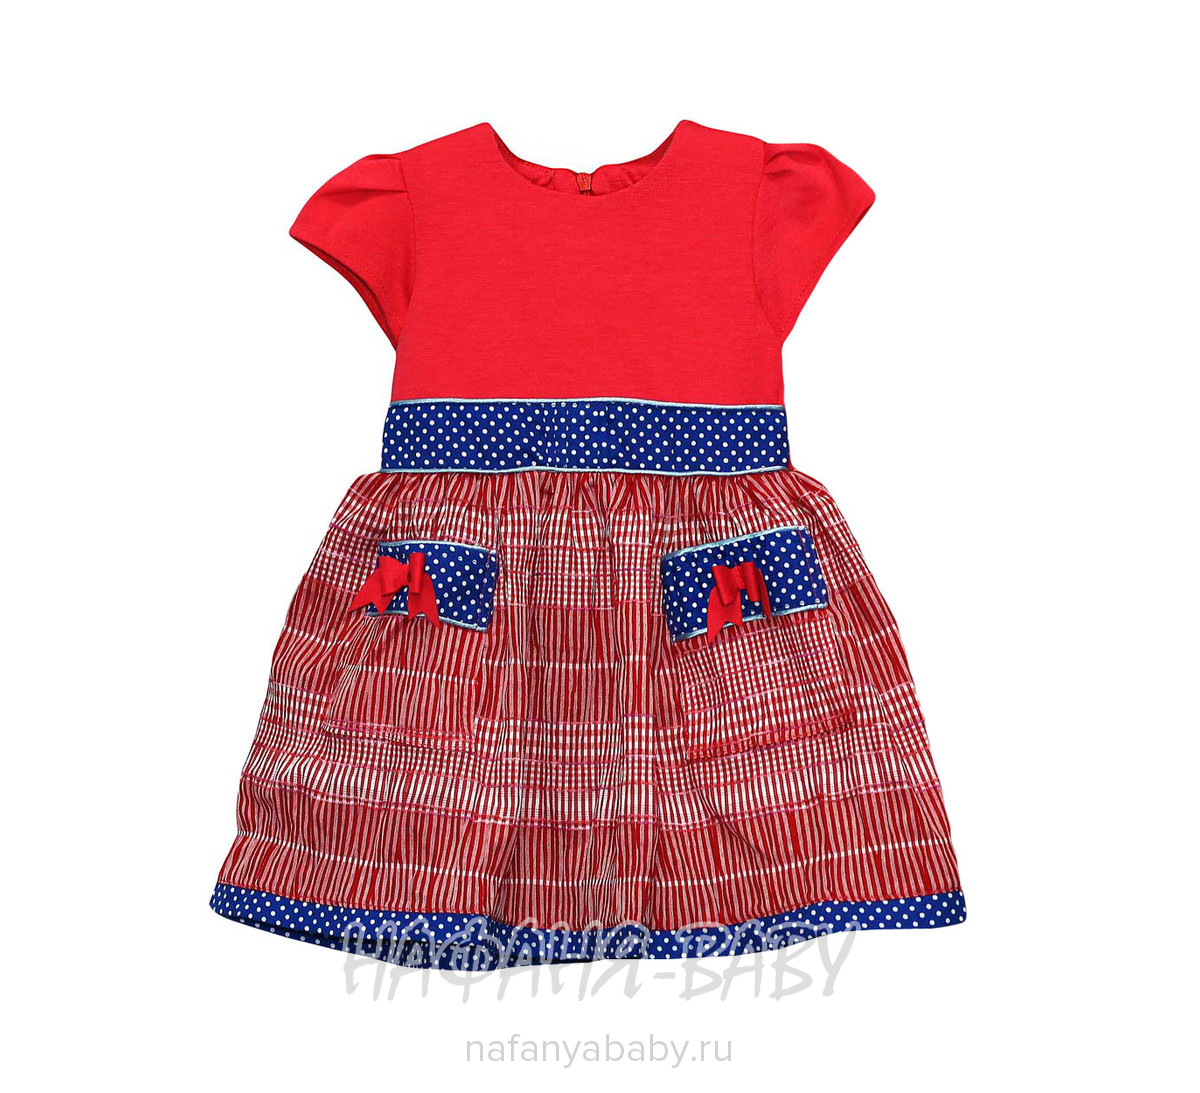 Детское платье KGMART арт: 2141, 5-9 лет, 1-4 года, цвет малиновый с красным, оптом 